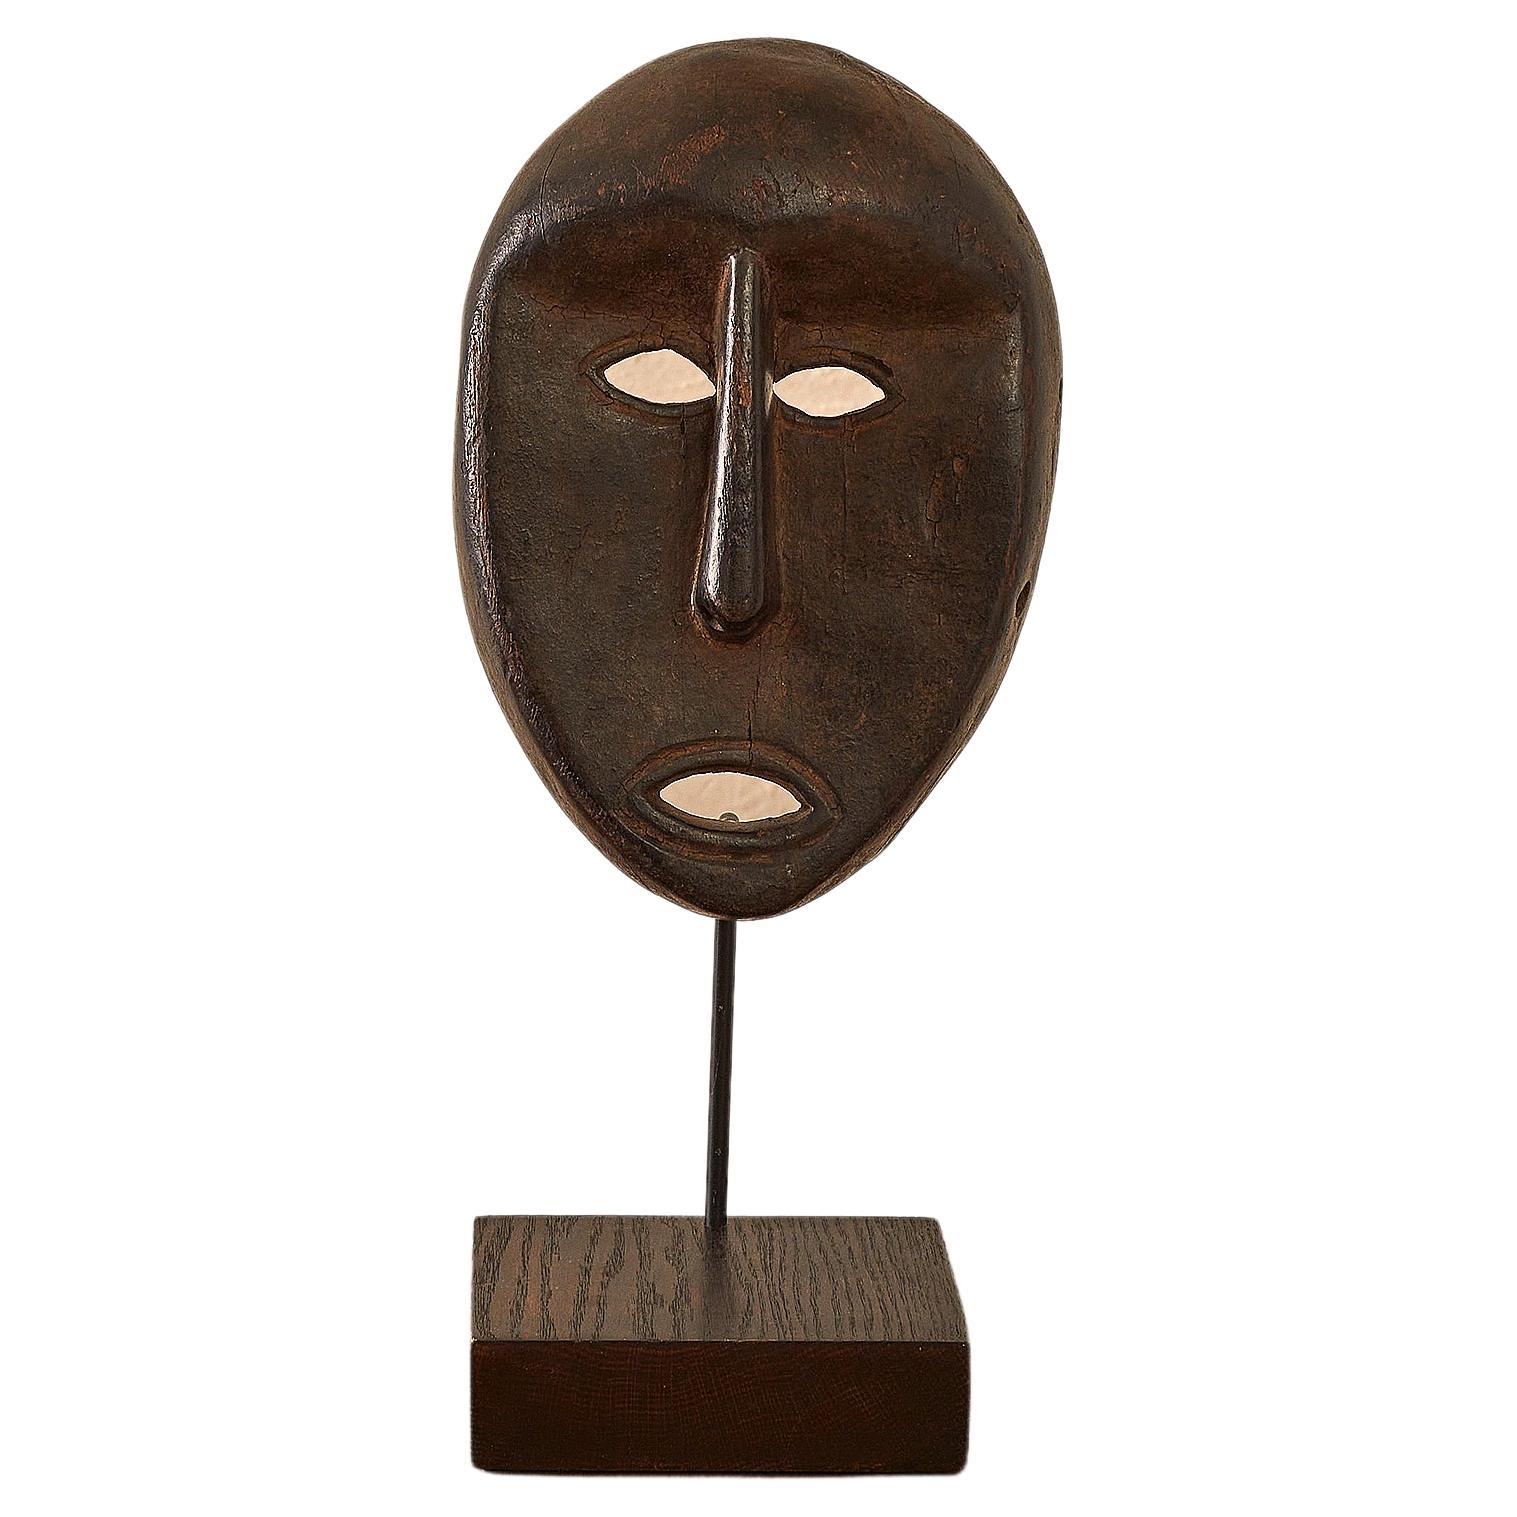 Nyamezi Mask from Tanzania